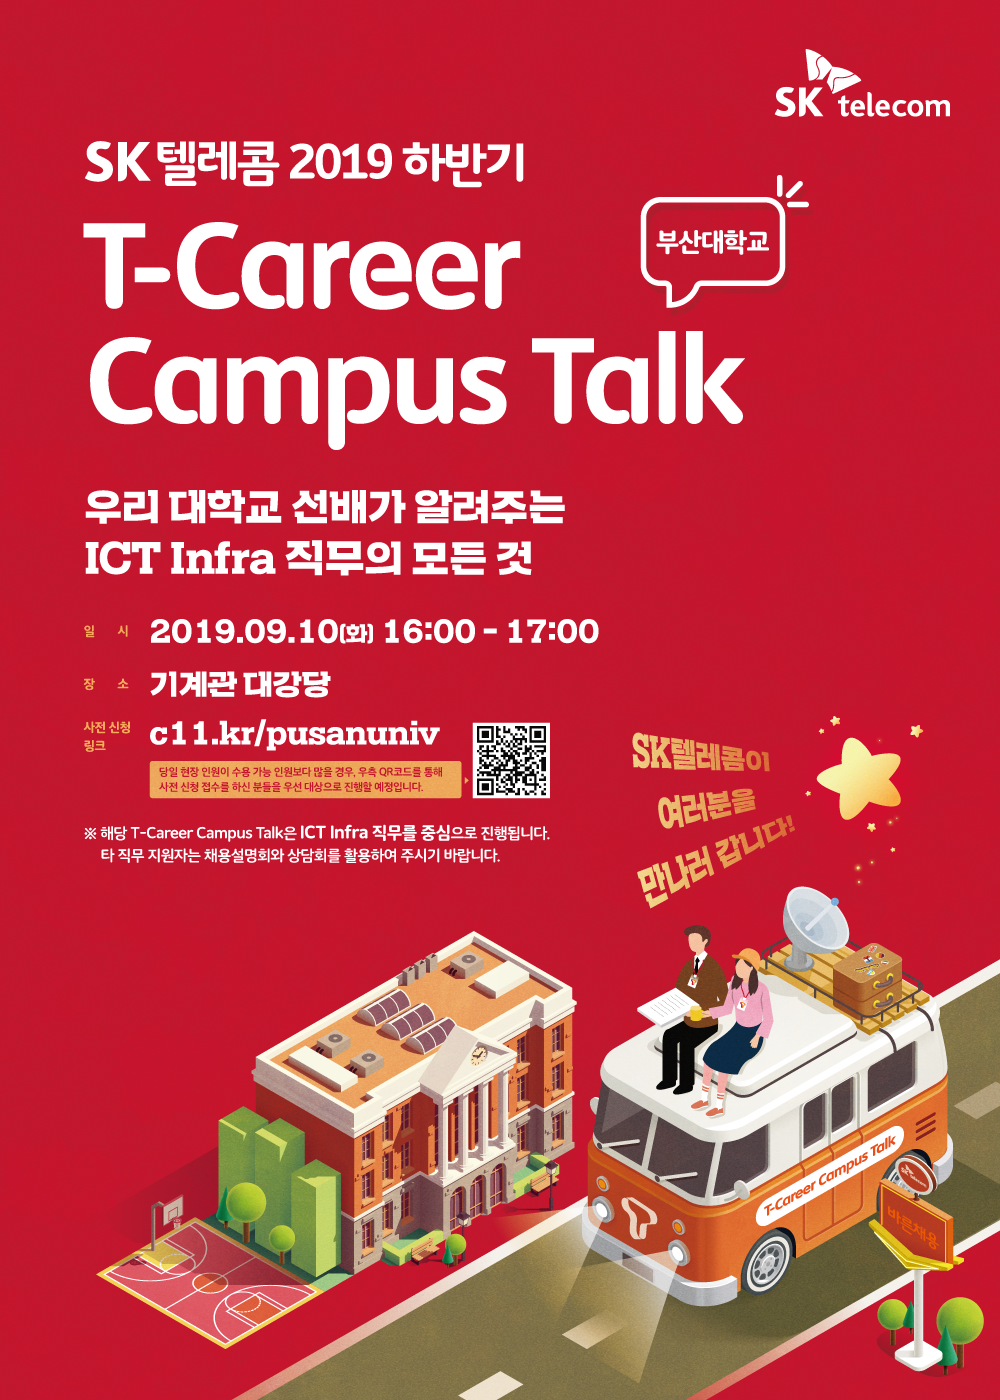 1567563807012.png : SK텔레콤 T-career Campus Talk 부산대는 9월 10일!!